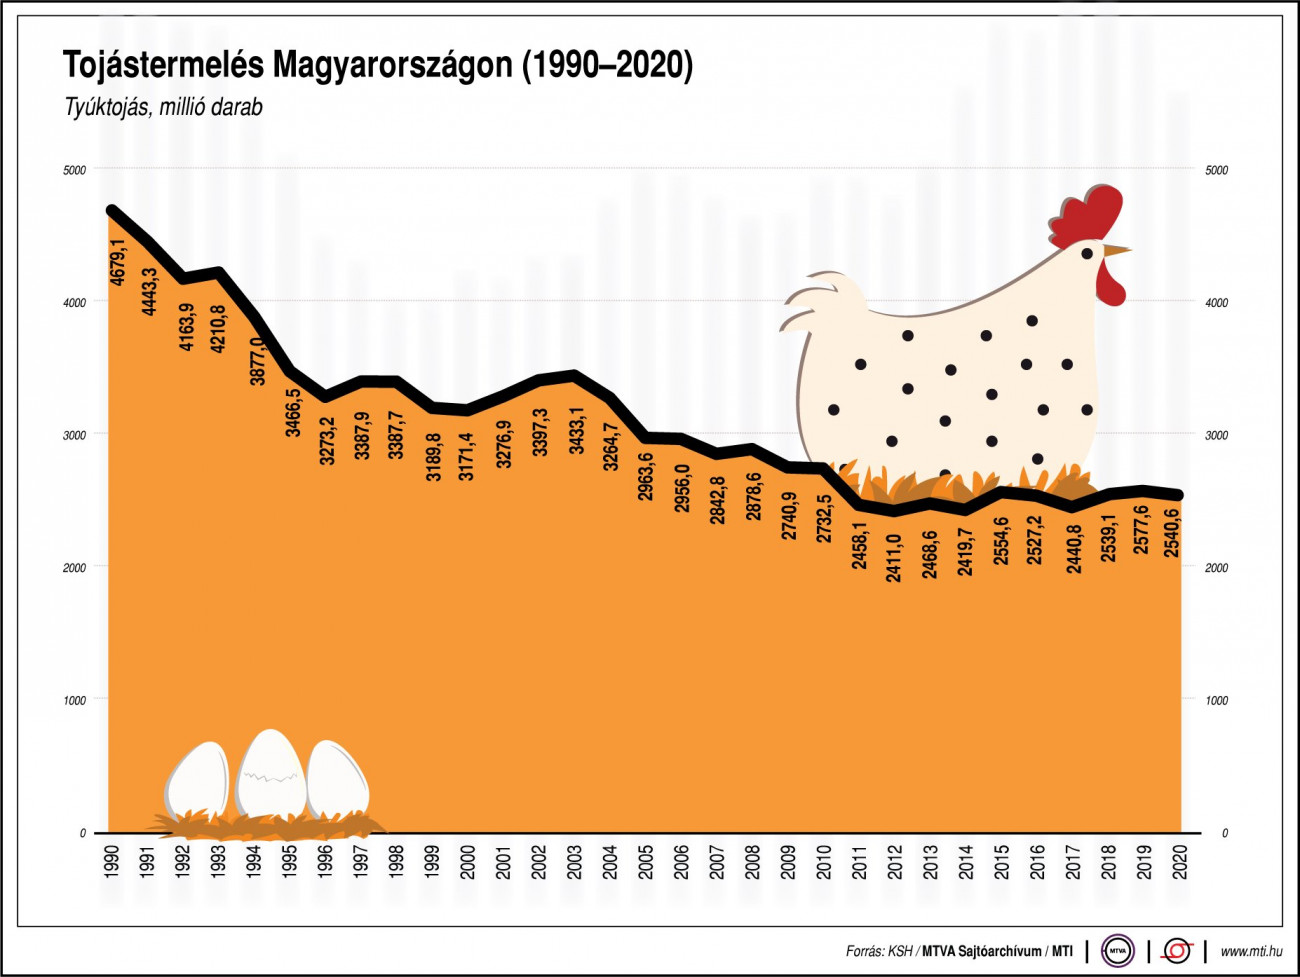 Tojástermelés Magyarországon (1990-2020)